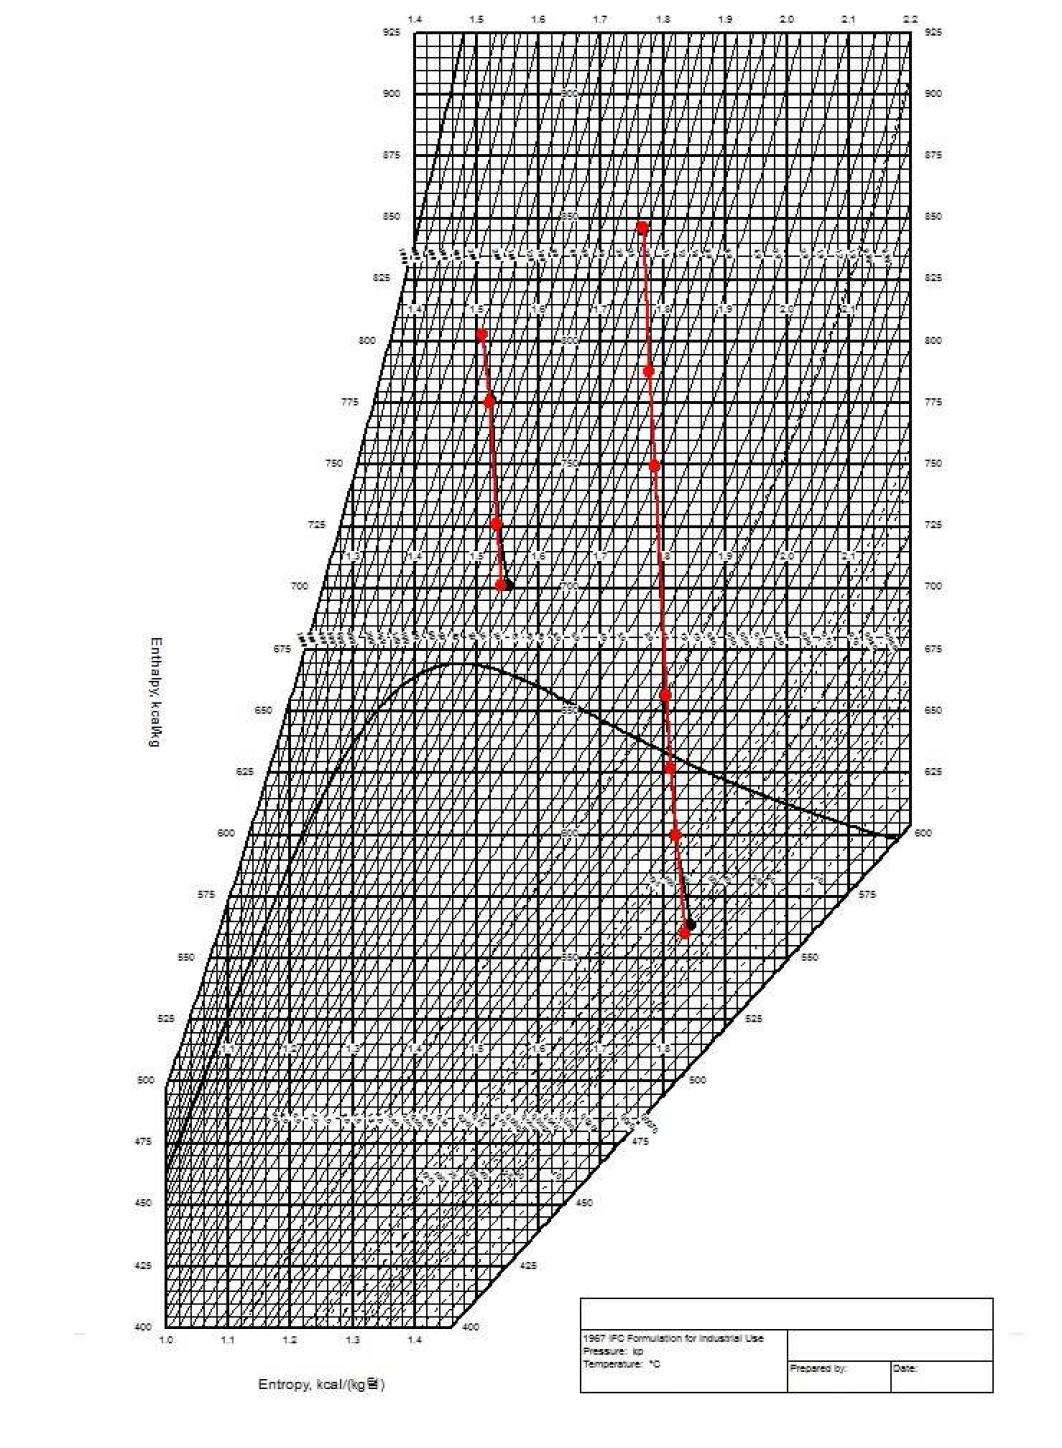 설계열평형도와 설계참조모델의 Mollier Diagram (75%NR)